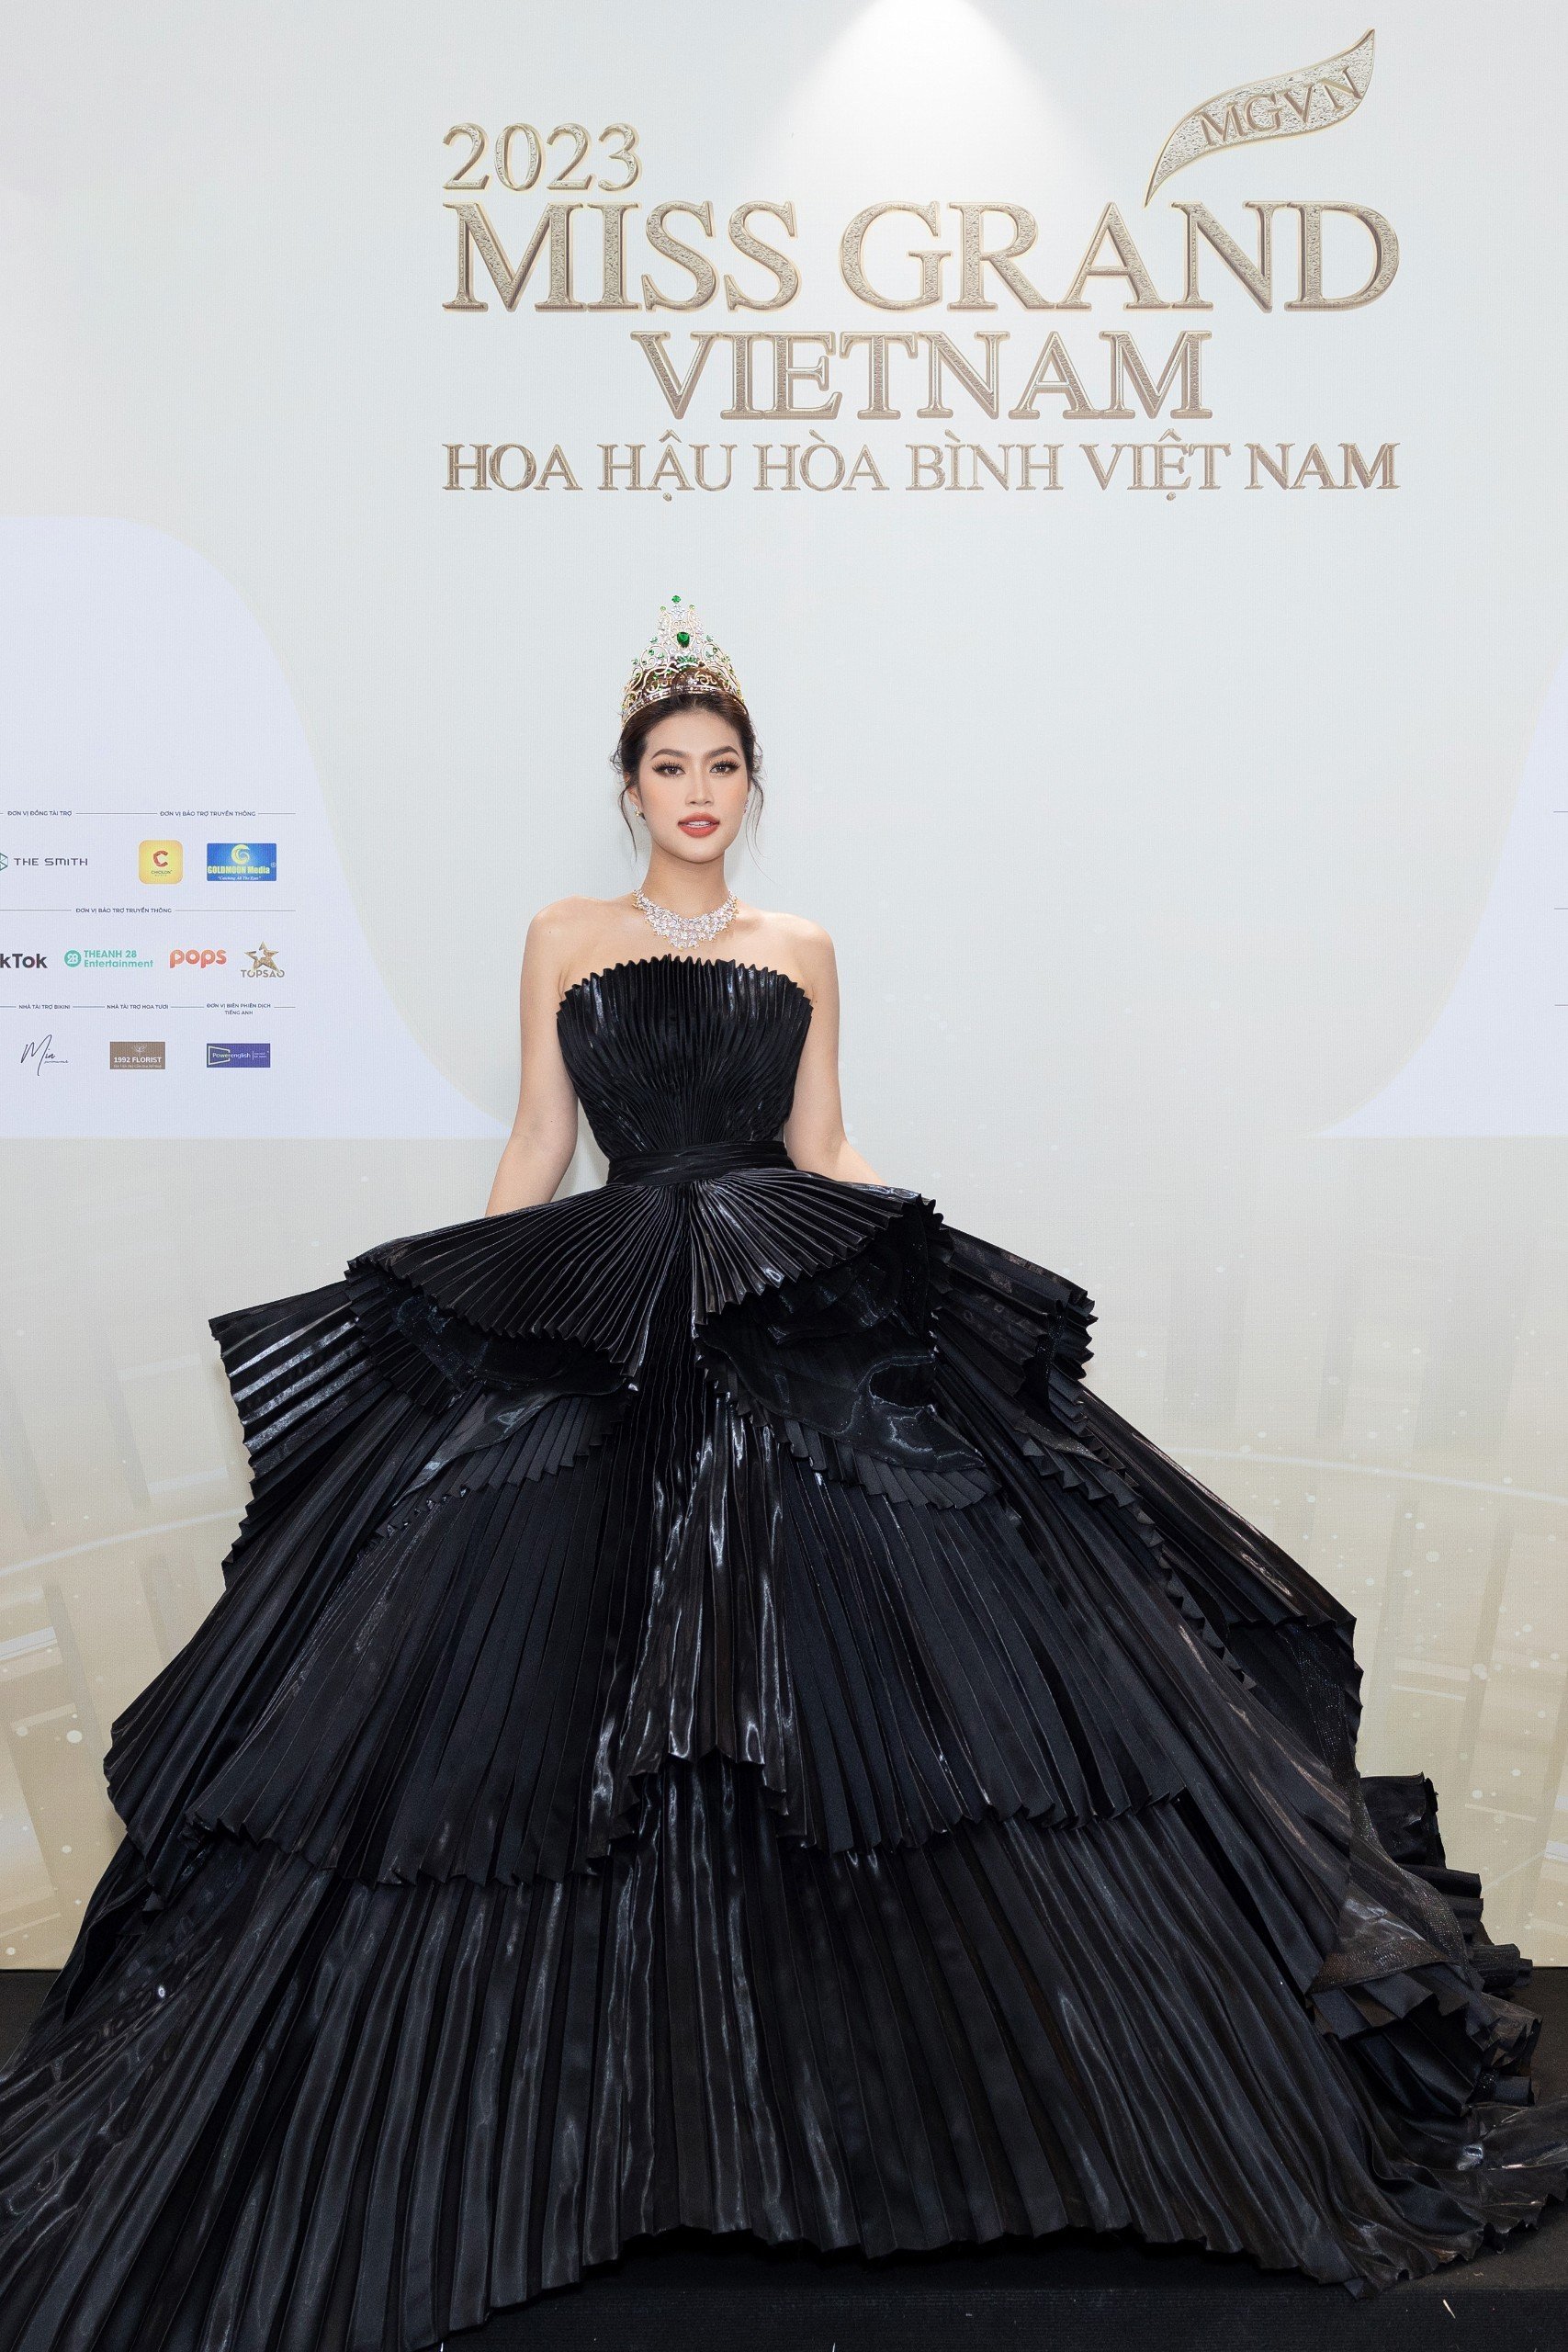 Miss Grand Vietnam 2022 Đoàn Thiên Ân nổi bật trong chiếc váy cúp ngực đen tuyền khoe bả vai thon gọn. Ngoài ra, thiết kế nhấn eo còn giúp nàng Hậu tôn trọn vòng hai ấn tượng.